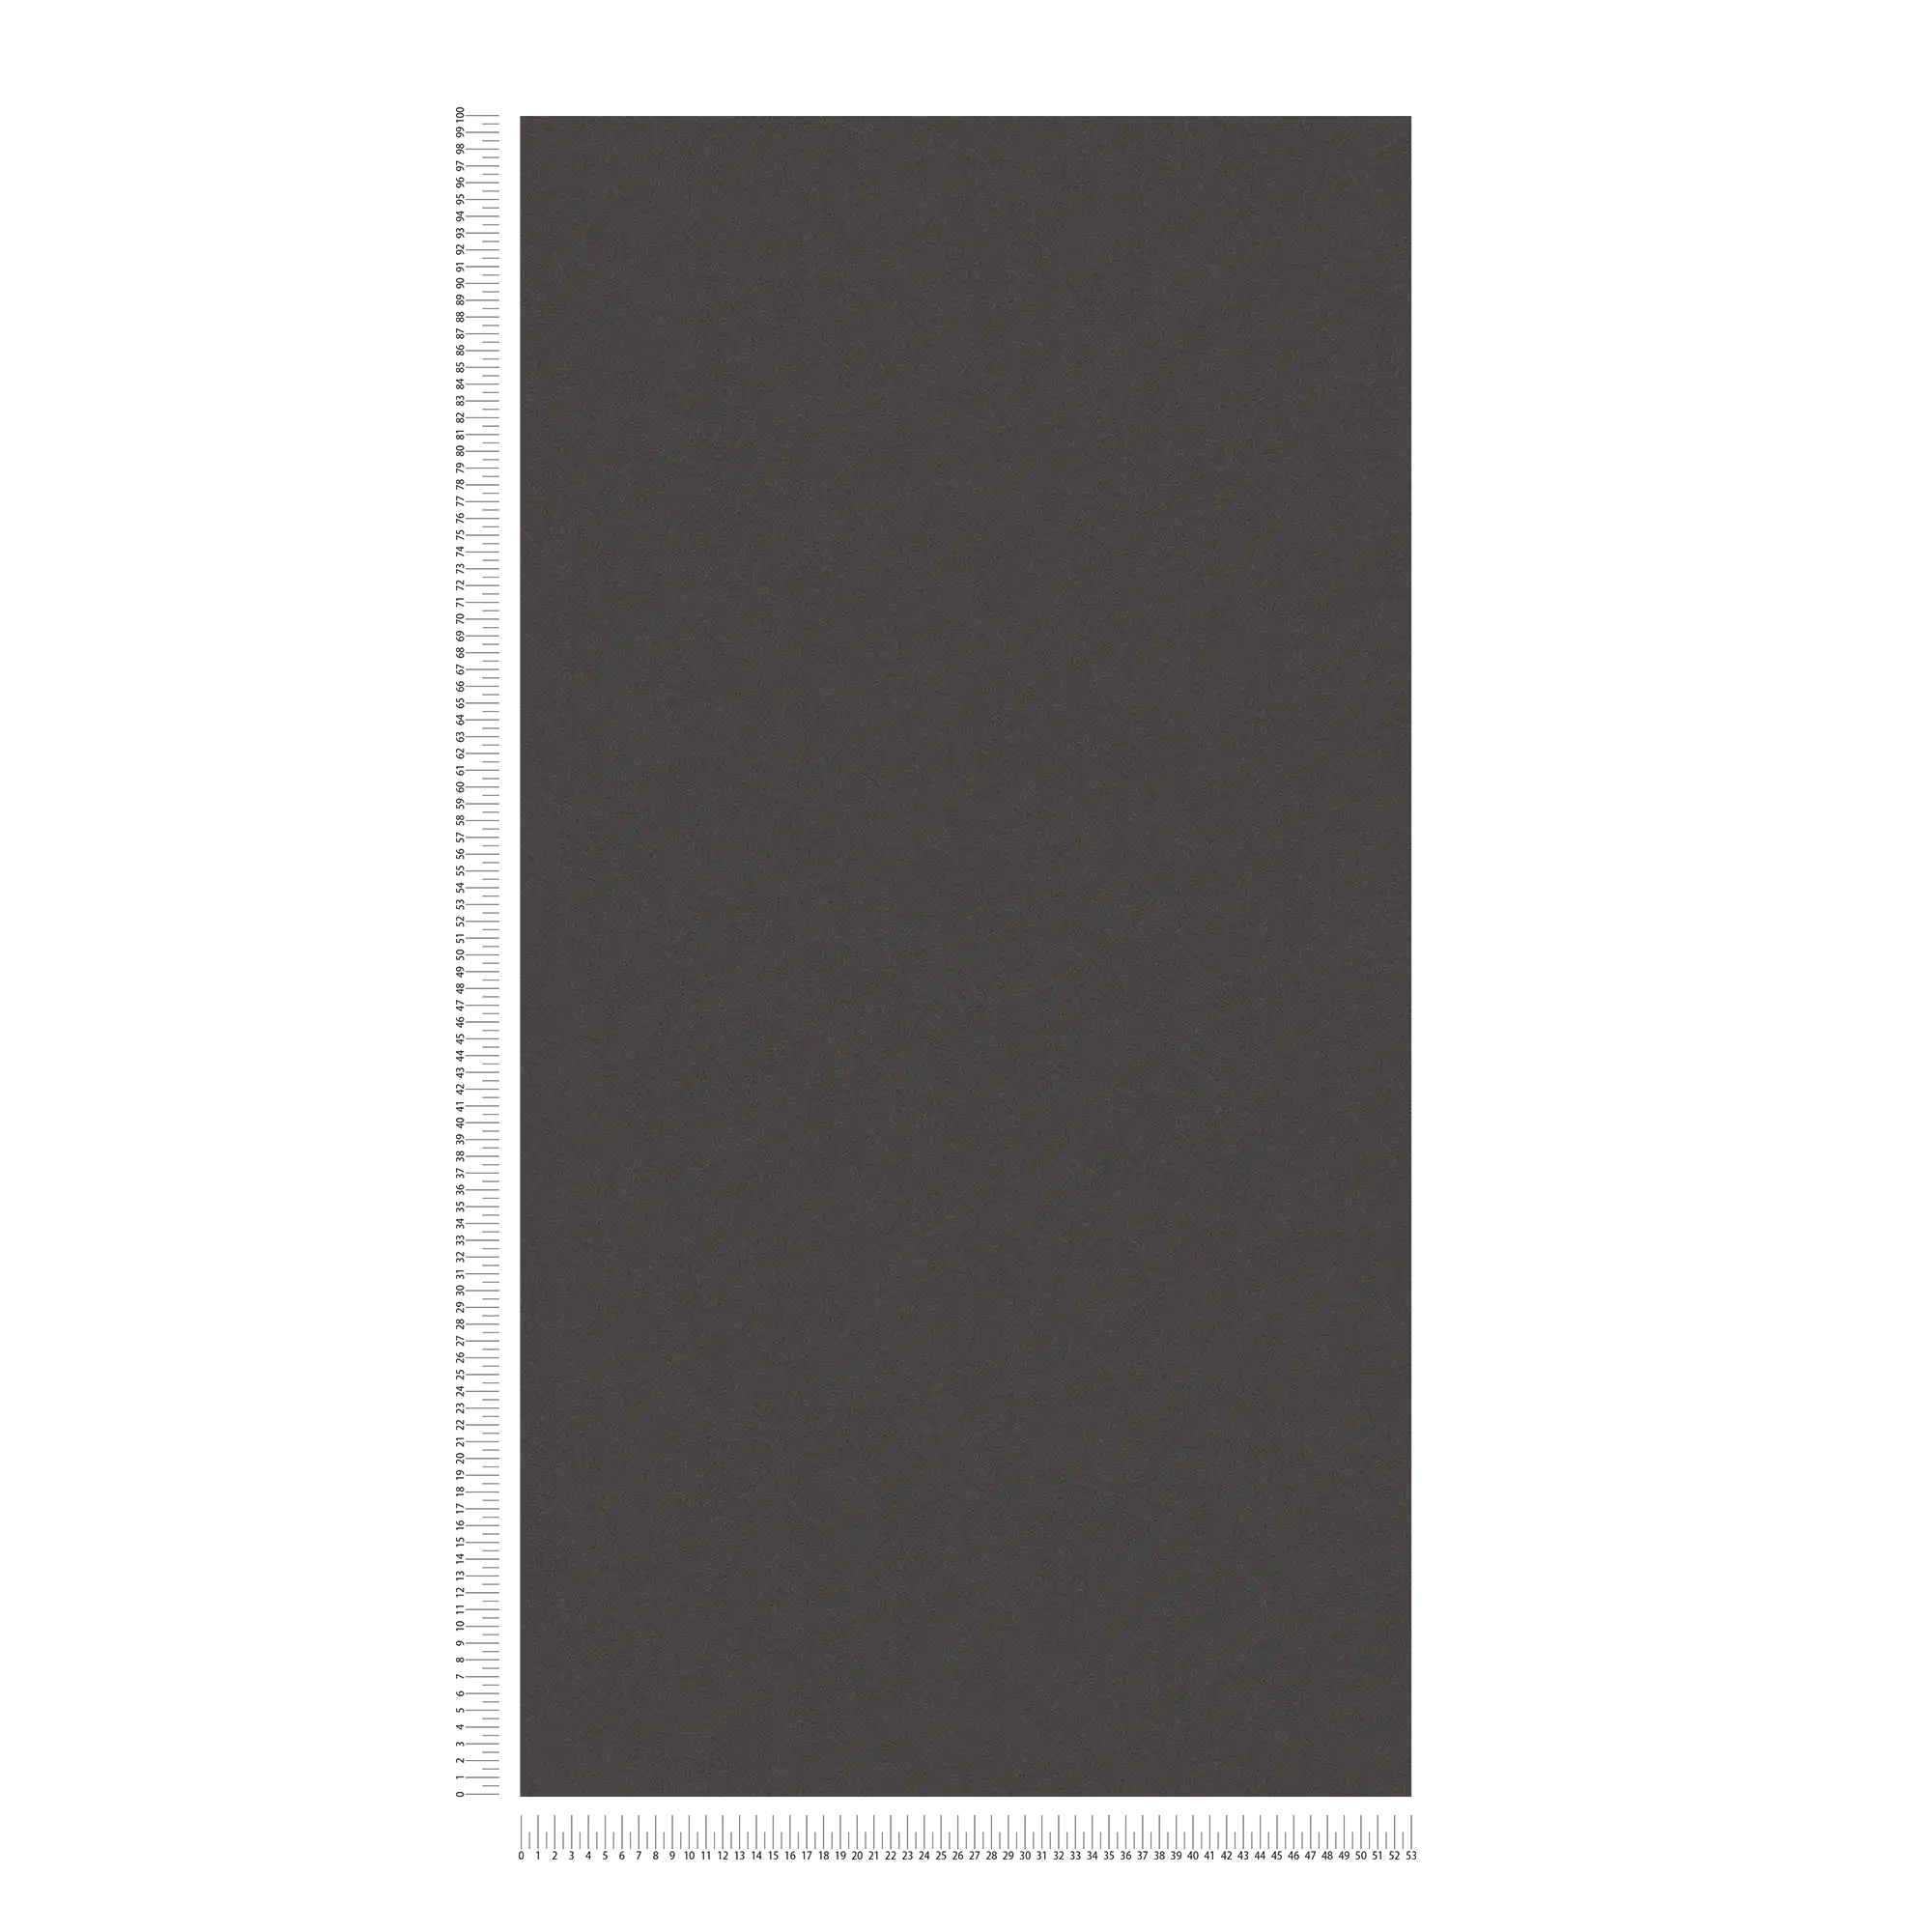             Carta da parati liscia con struttura superficiale discreta - nero
        